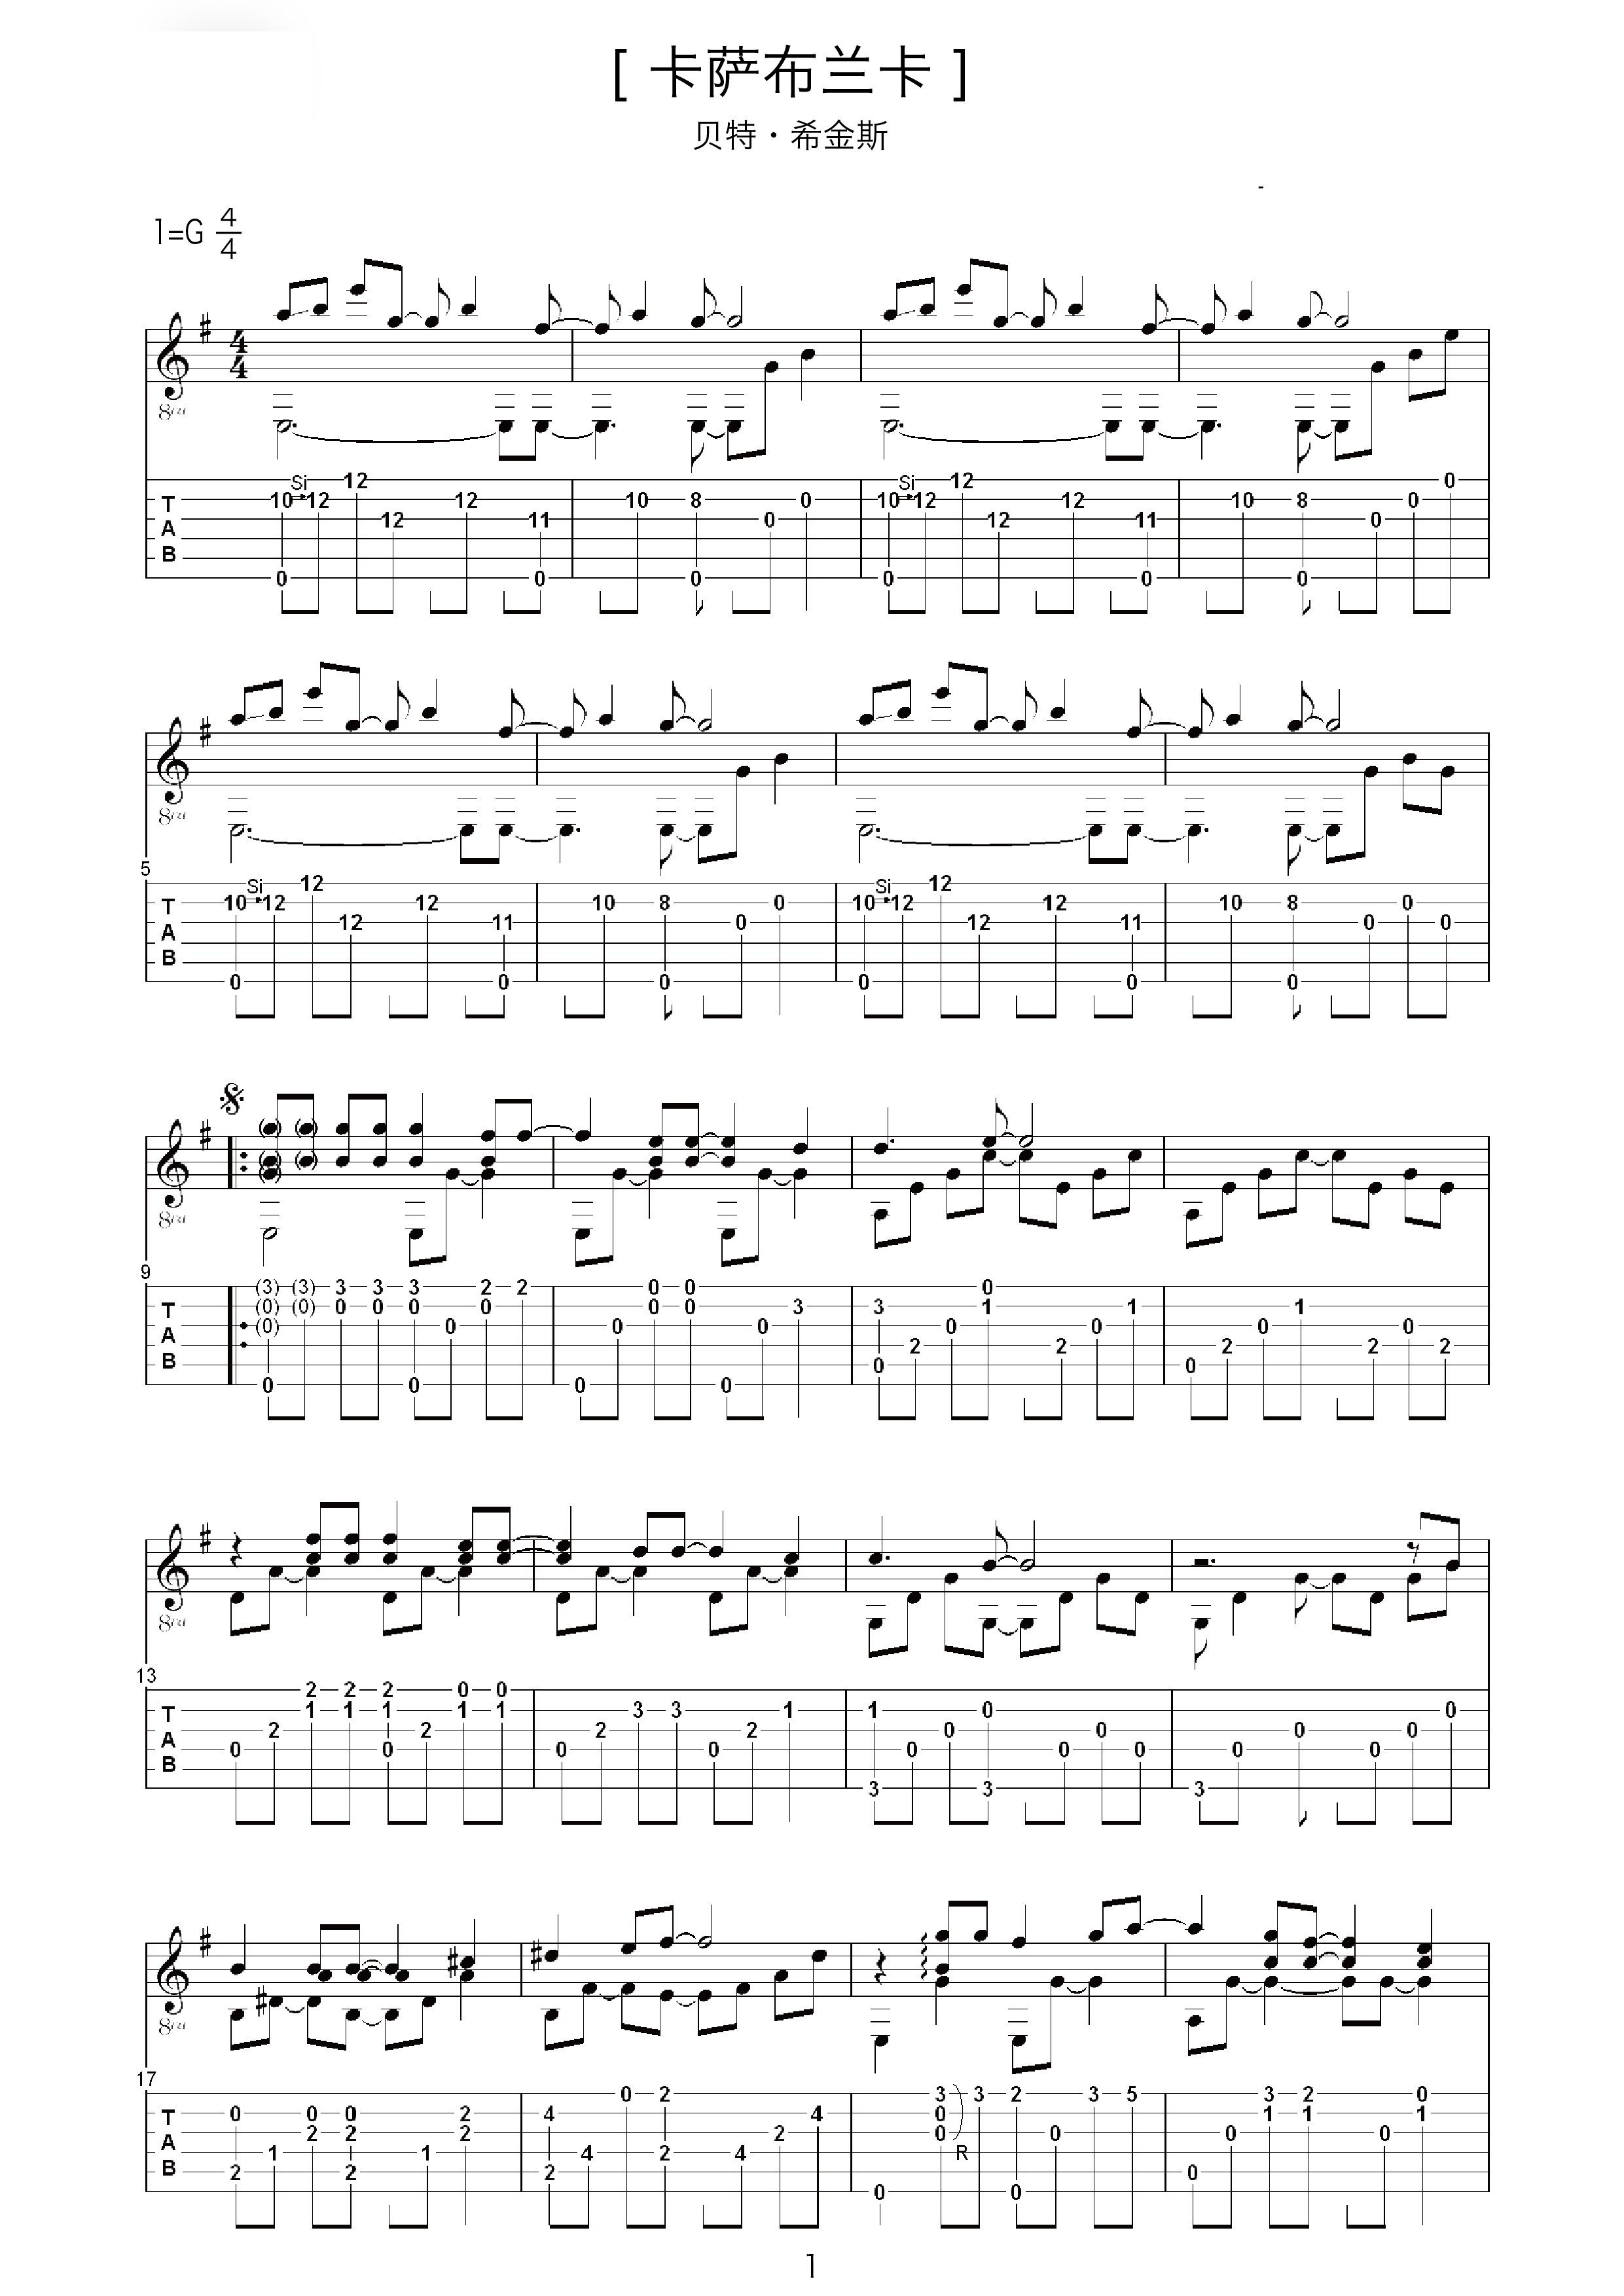 指弹改编 | 经典歌曲《卡萨布兰卡》吉他独奏版（附谱&教学） - 哔哩哔哩